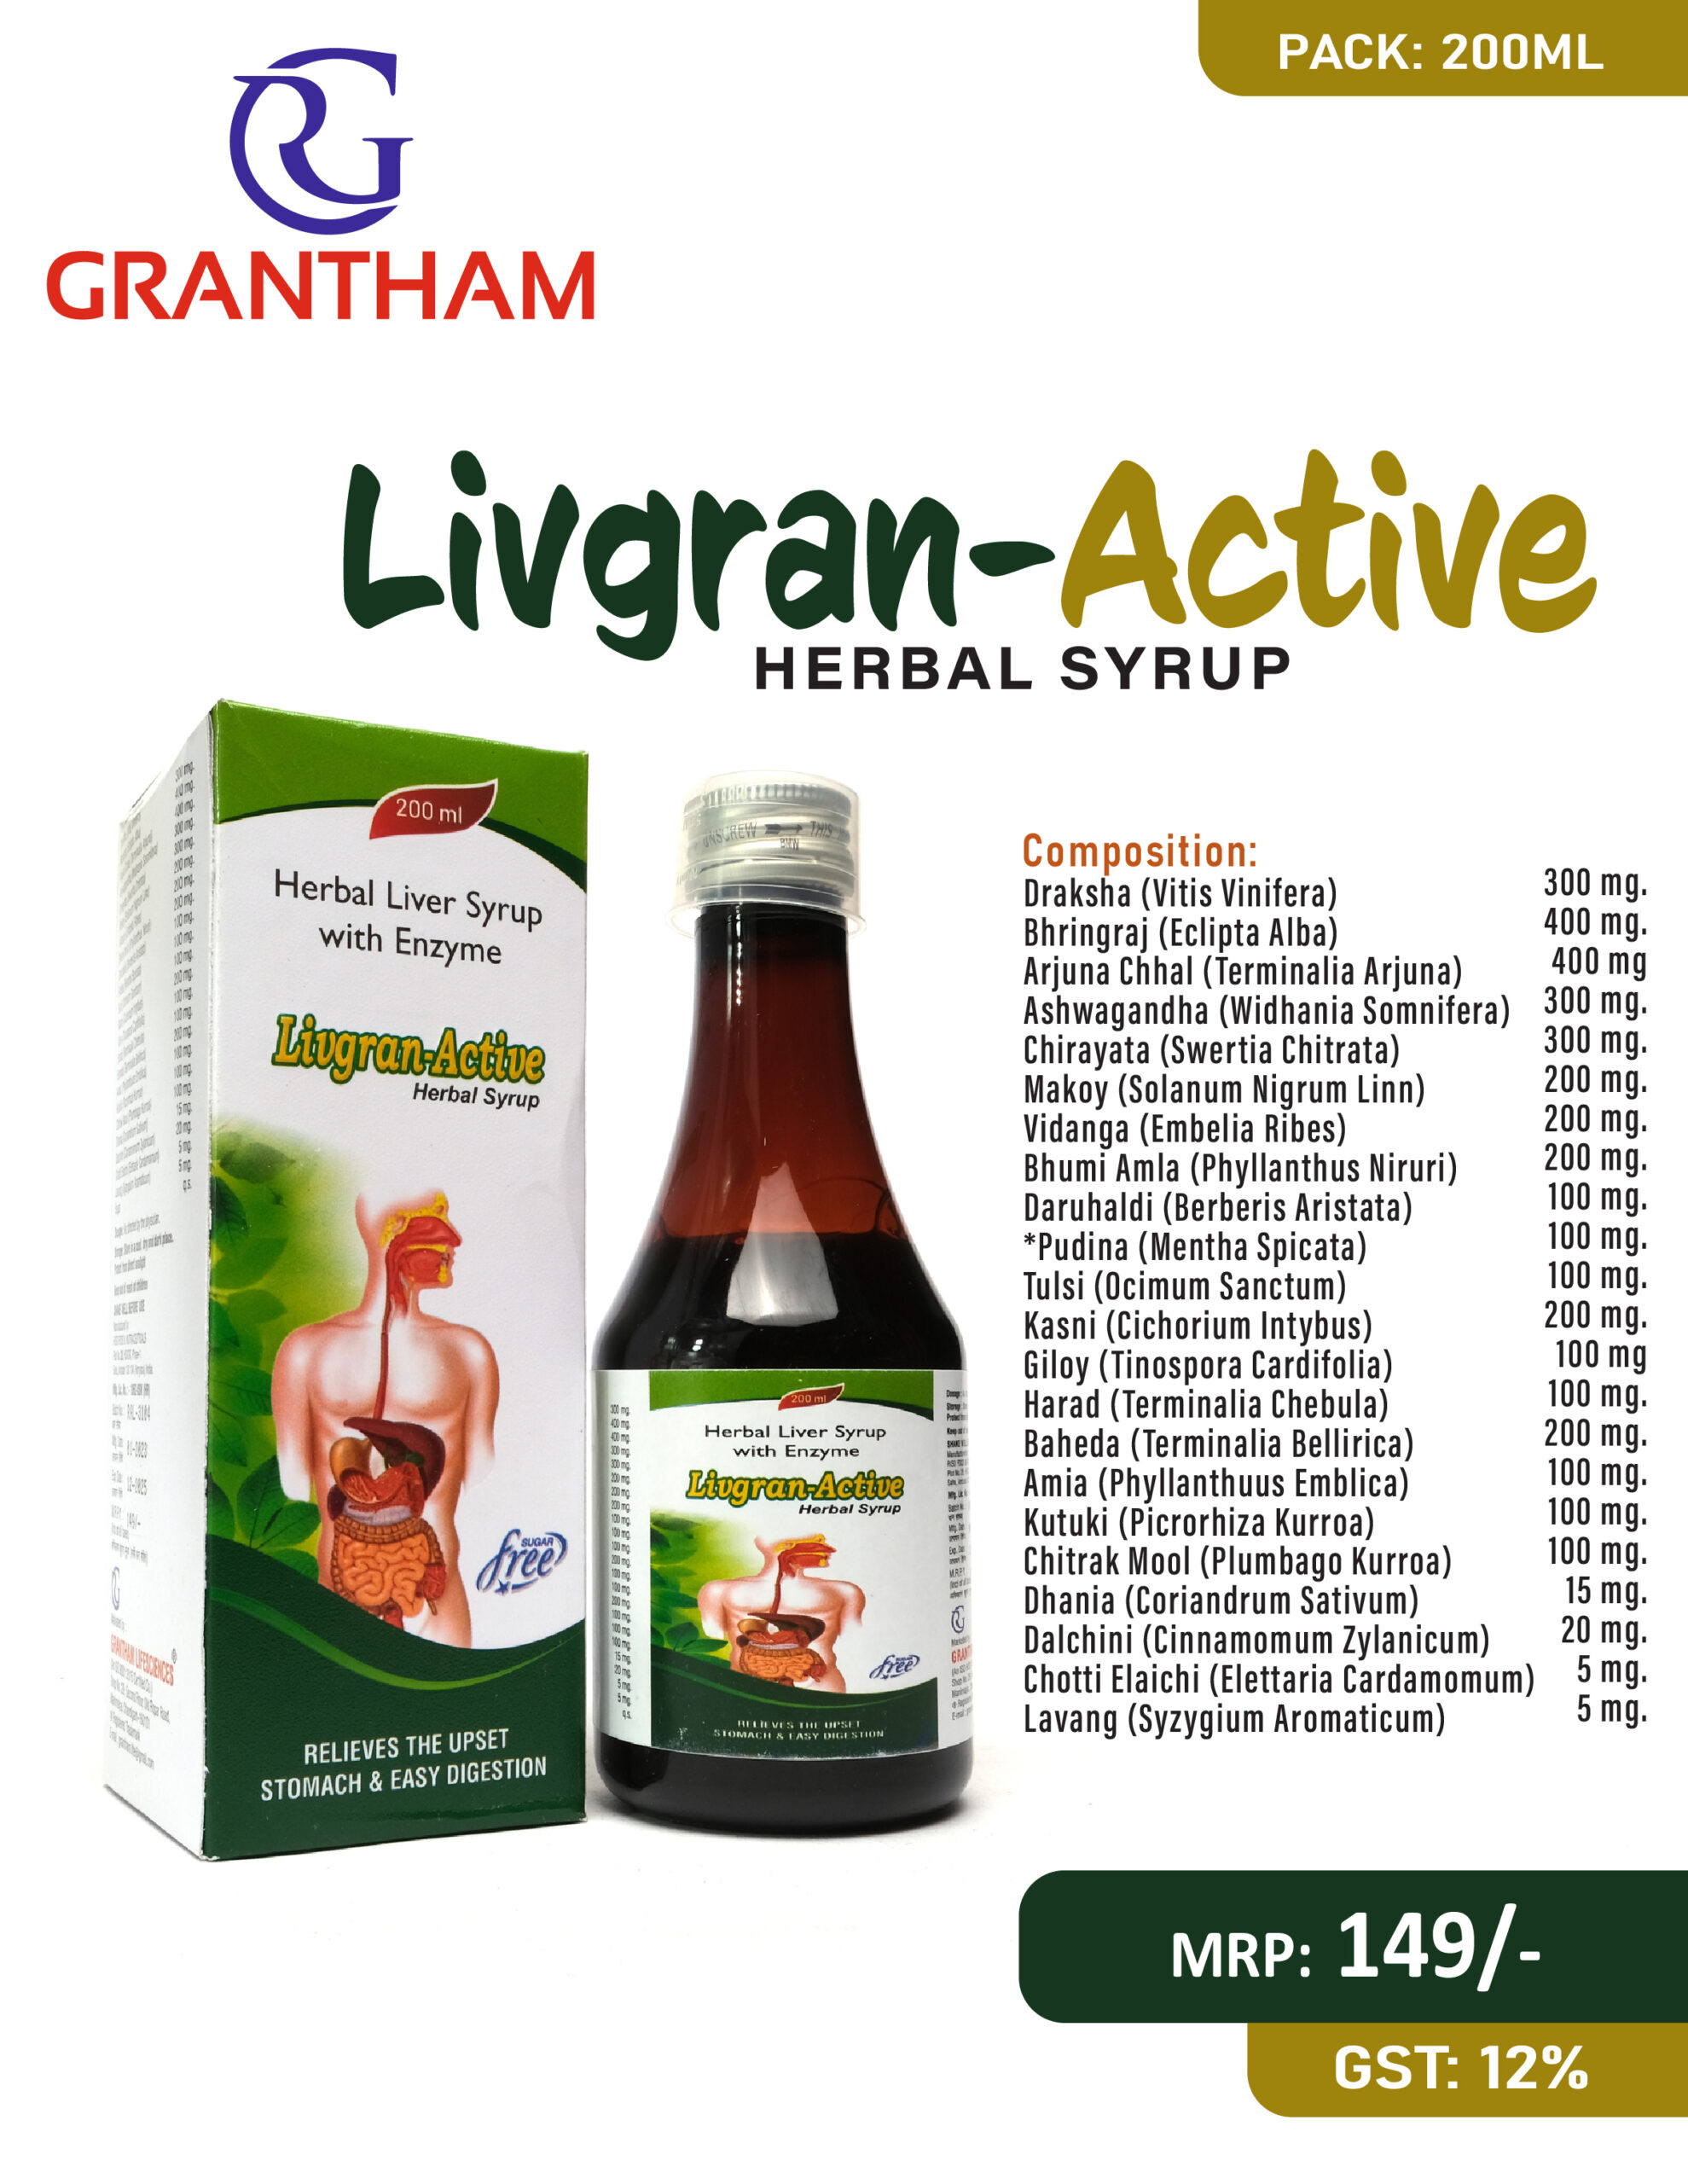 LIVGRAN ACTIVE